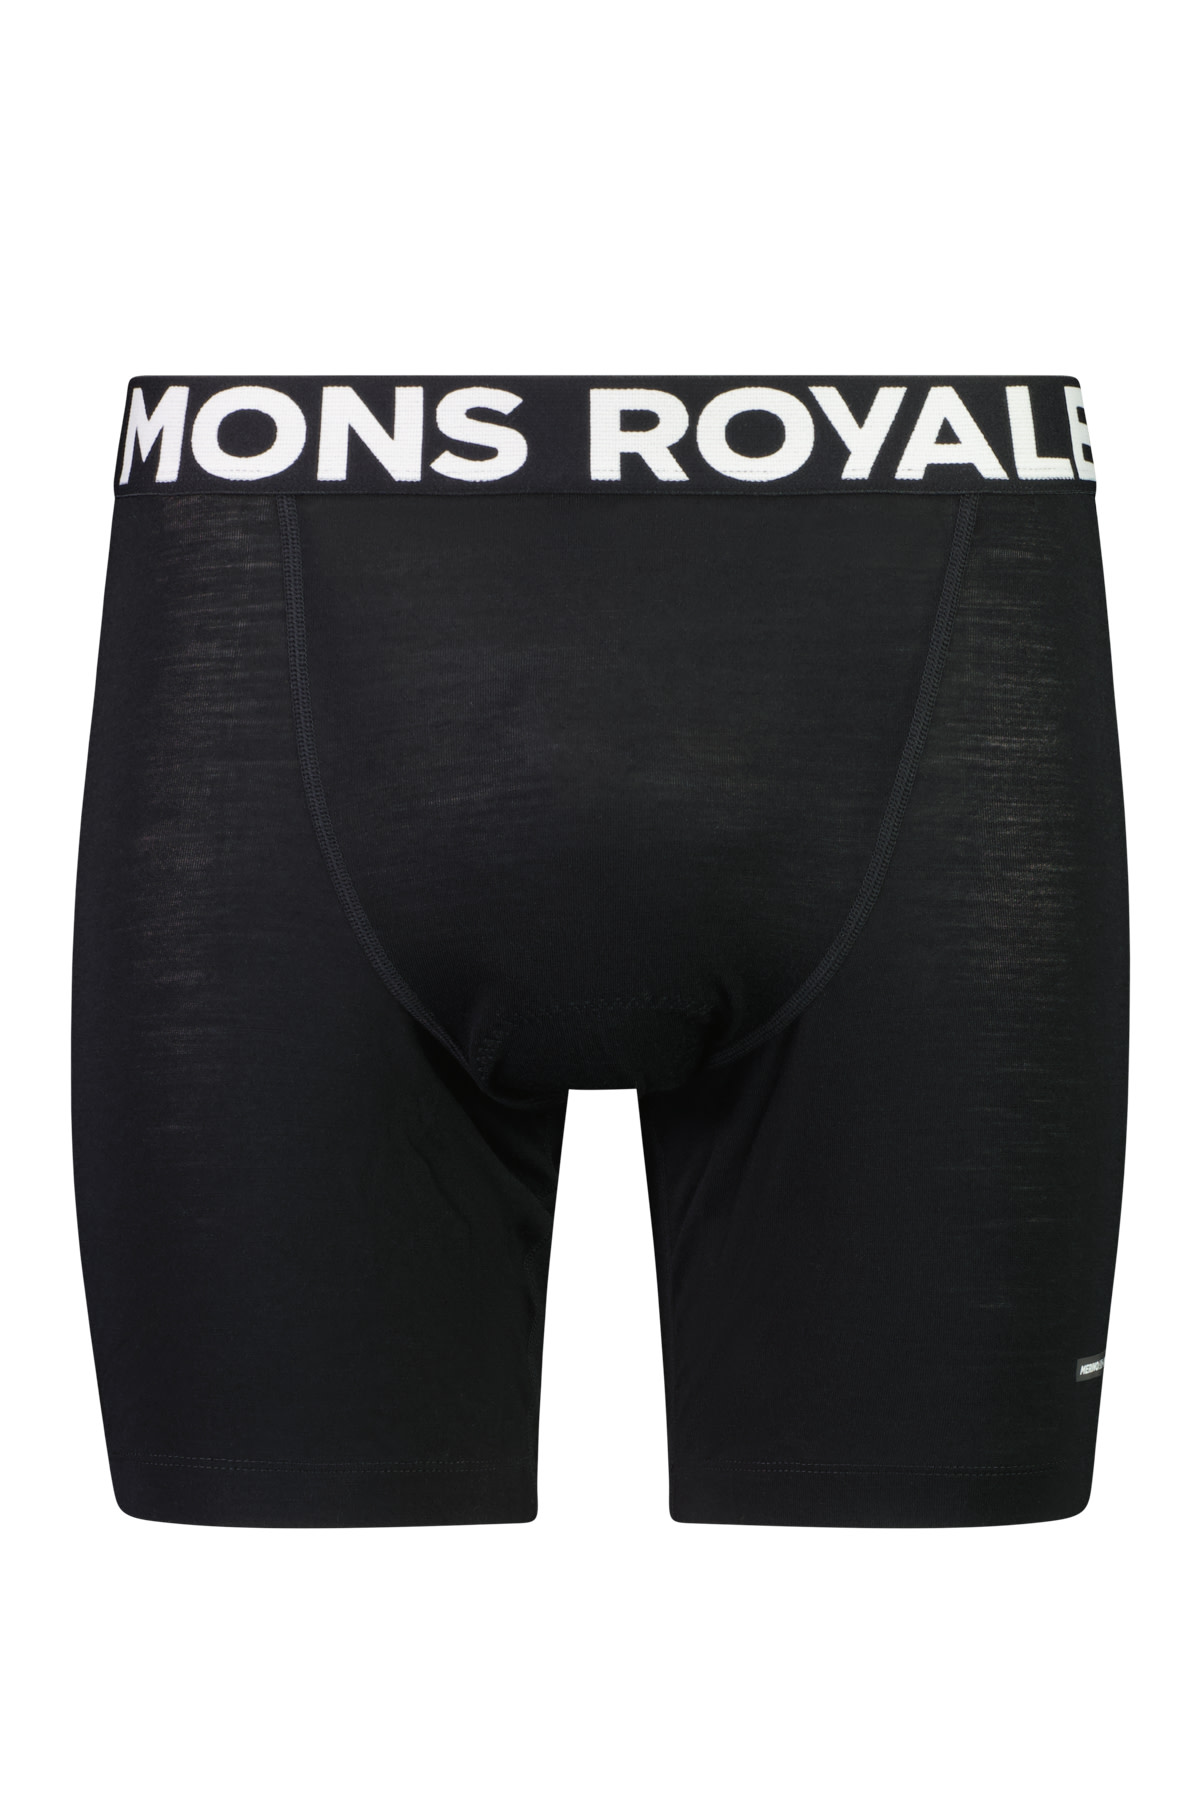 Mons Royale Men's Low Pro Merino Aircon Bike Short Liner Black